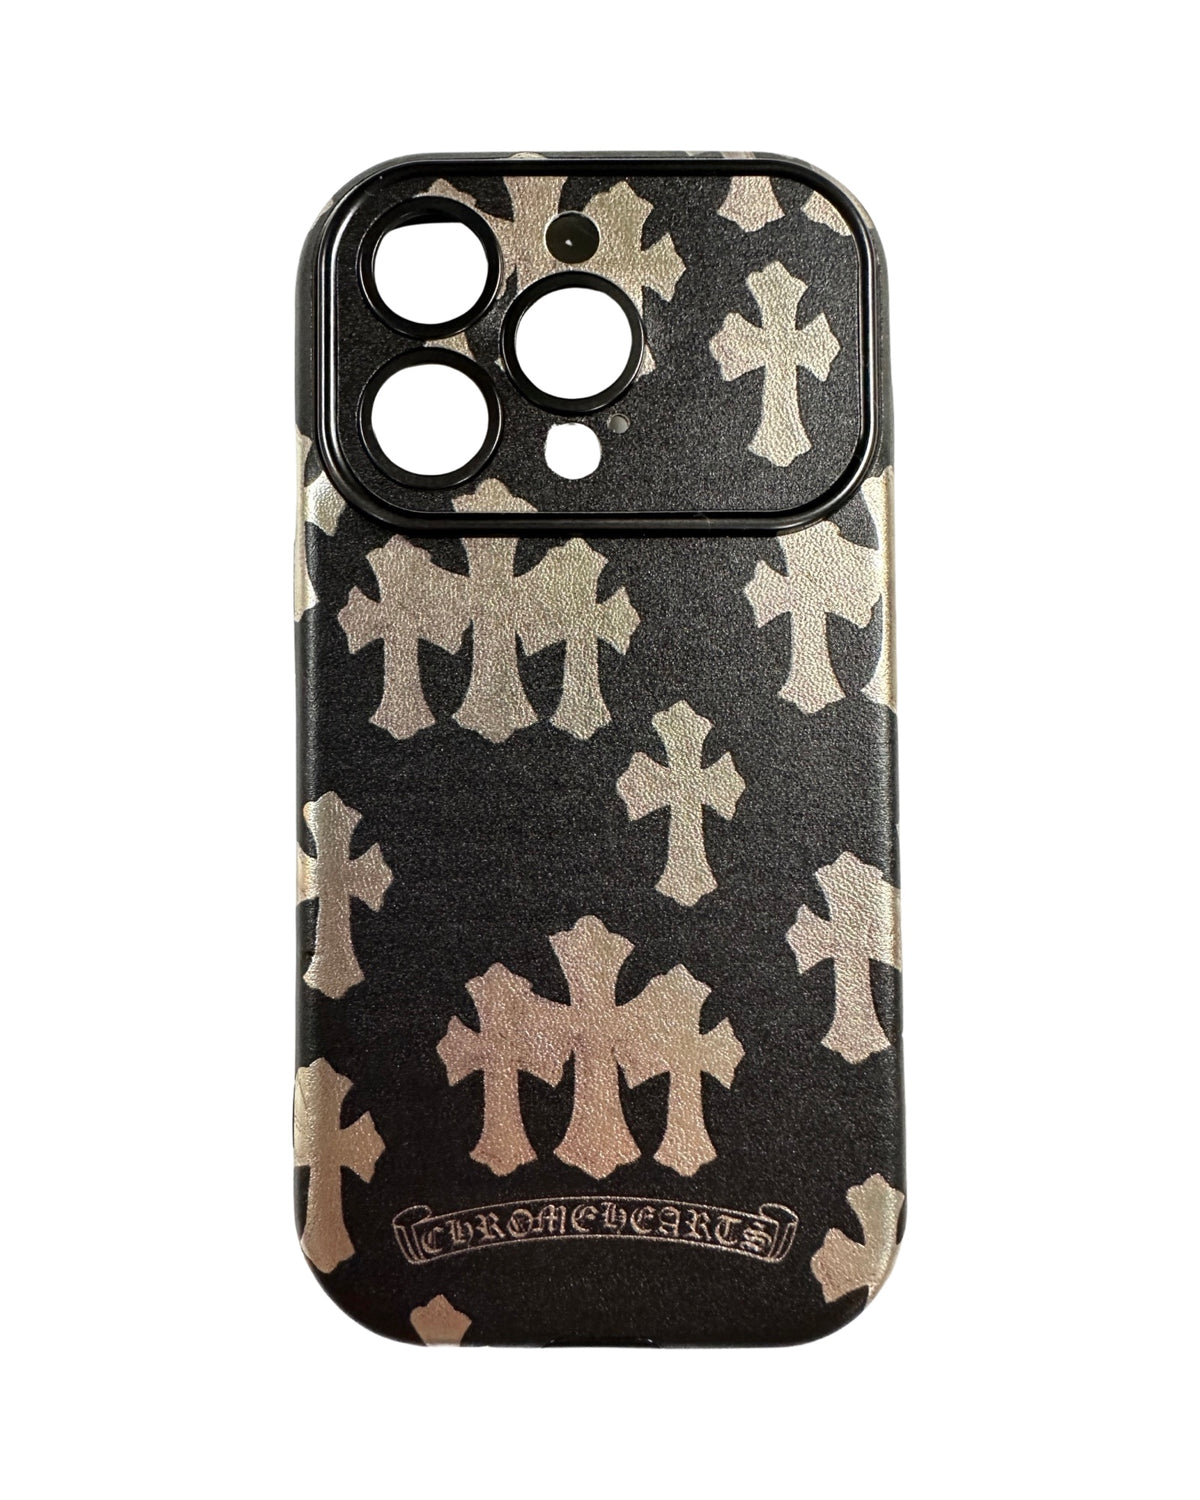 CaseNerd "Cross Metallic Black" iPhone Case